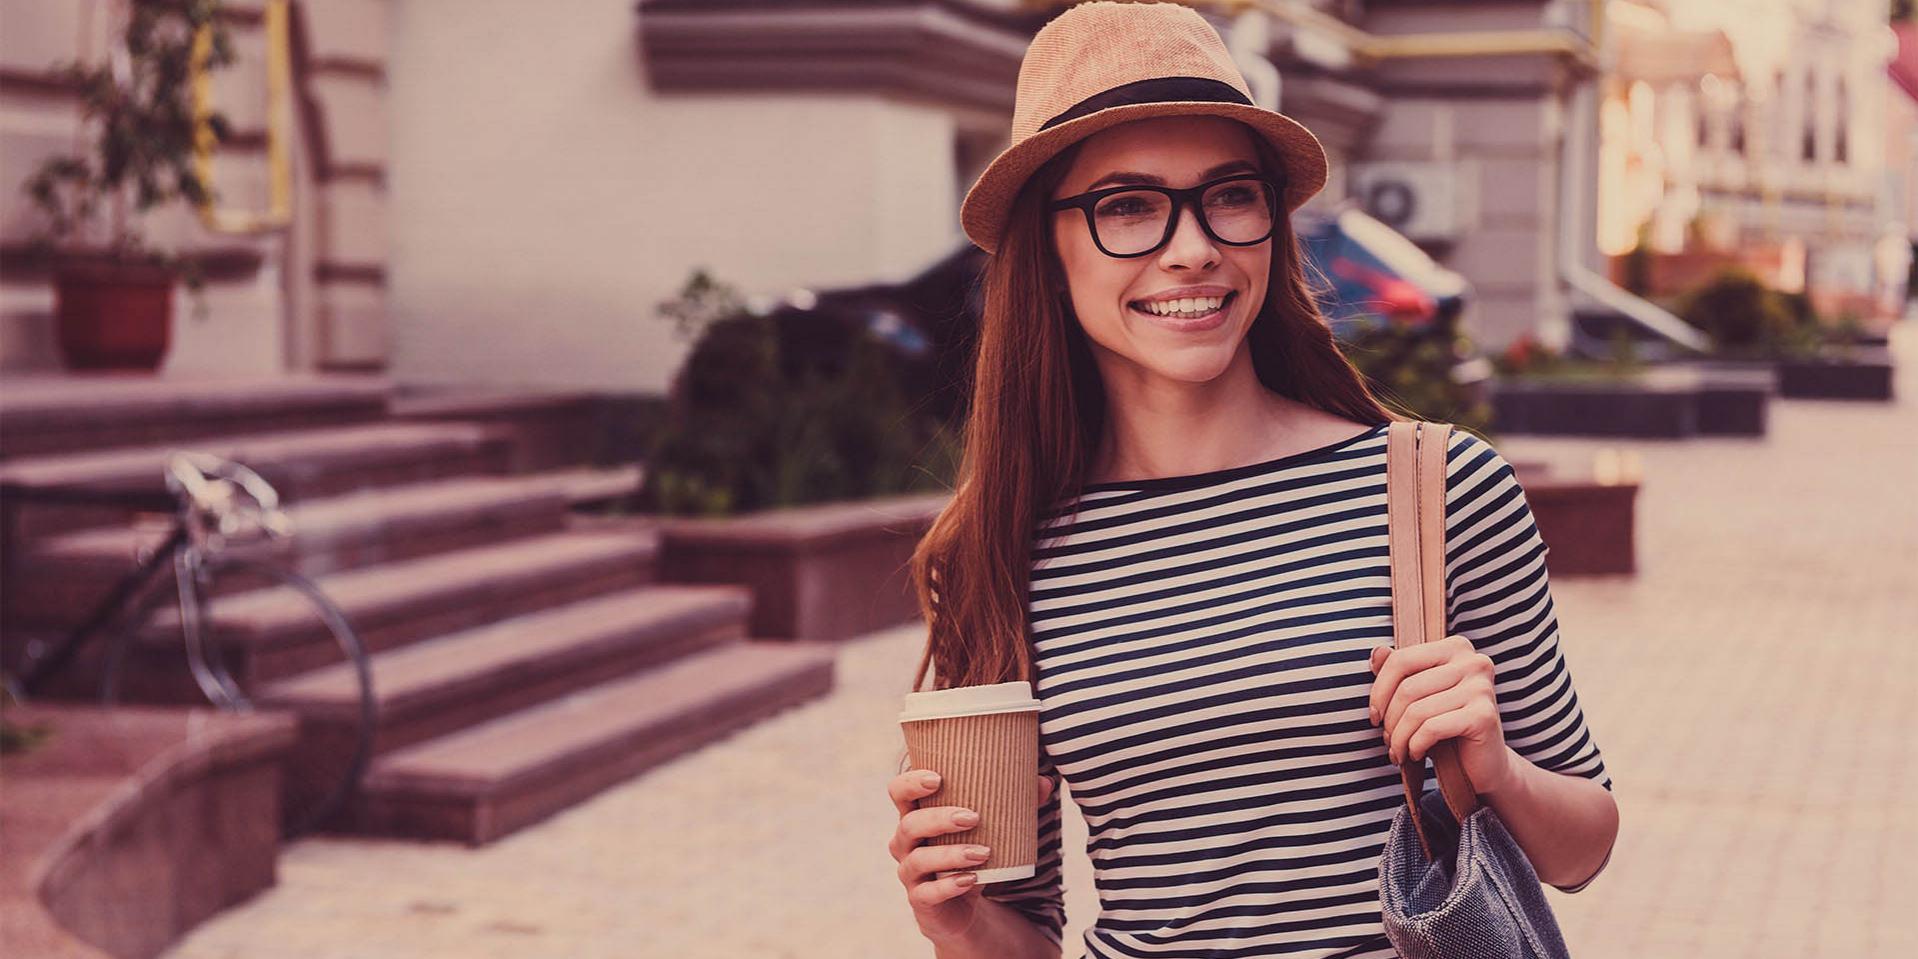 En ung kvinne med caps og briller bærer et kaffekrus (høyre side) og en bag på venstre skulder